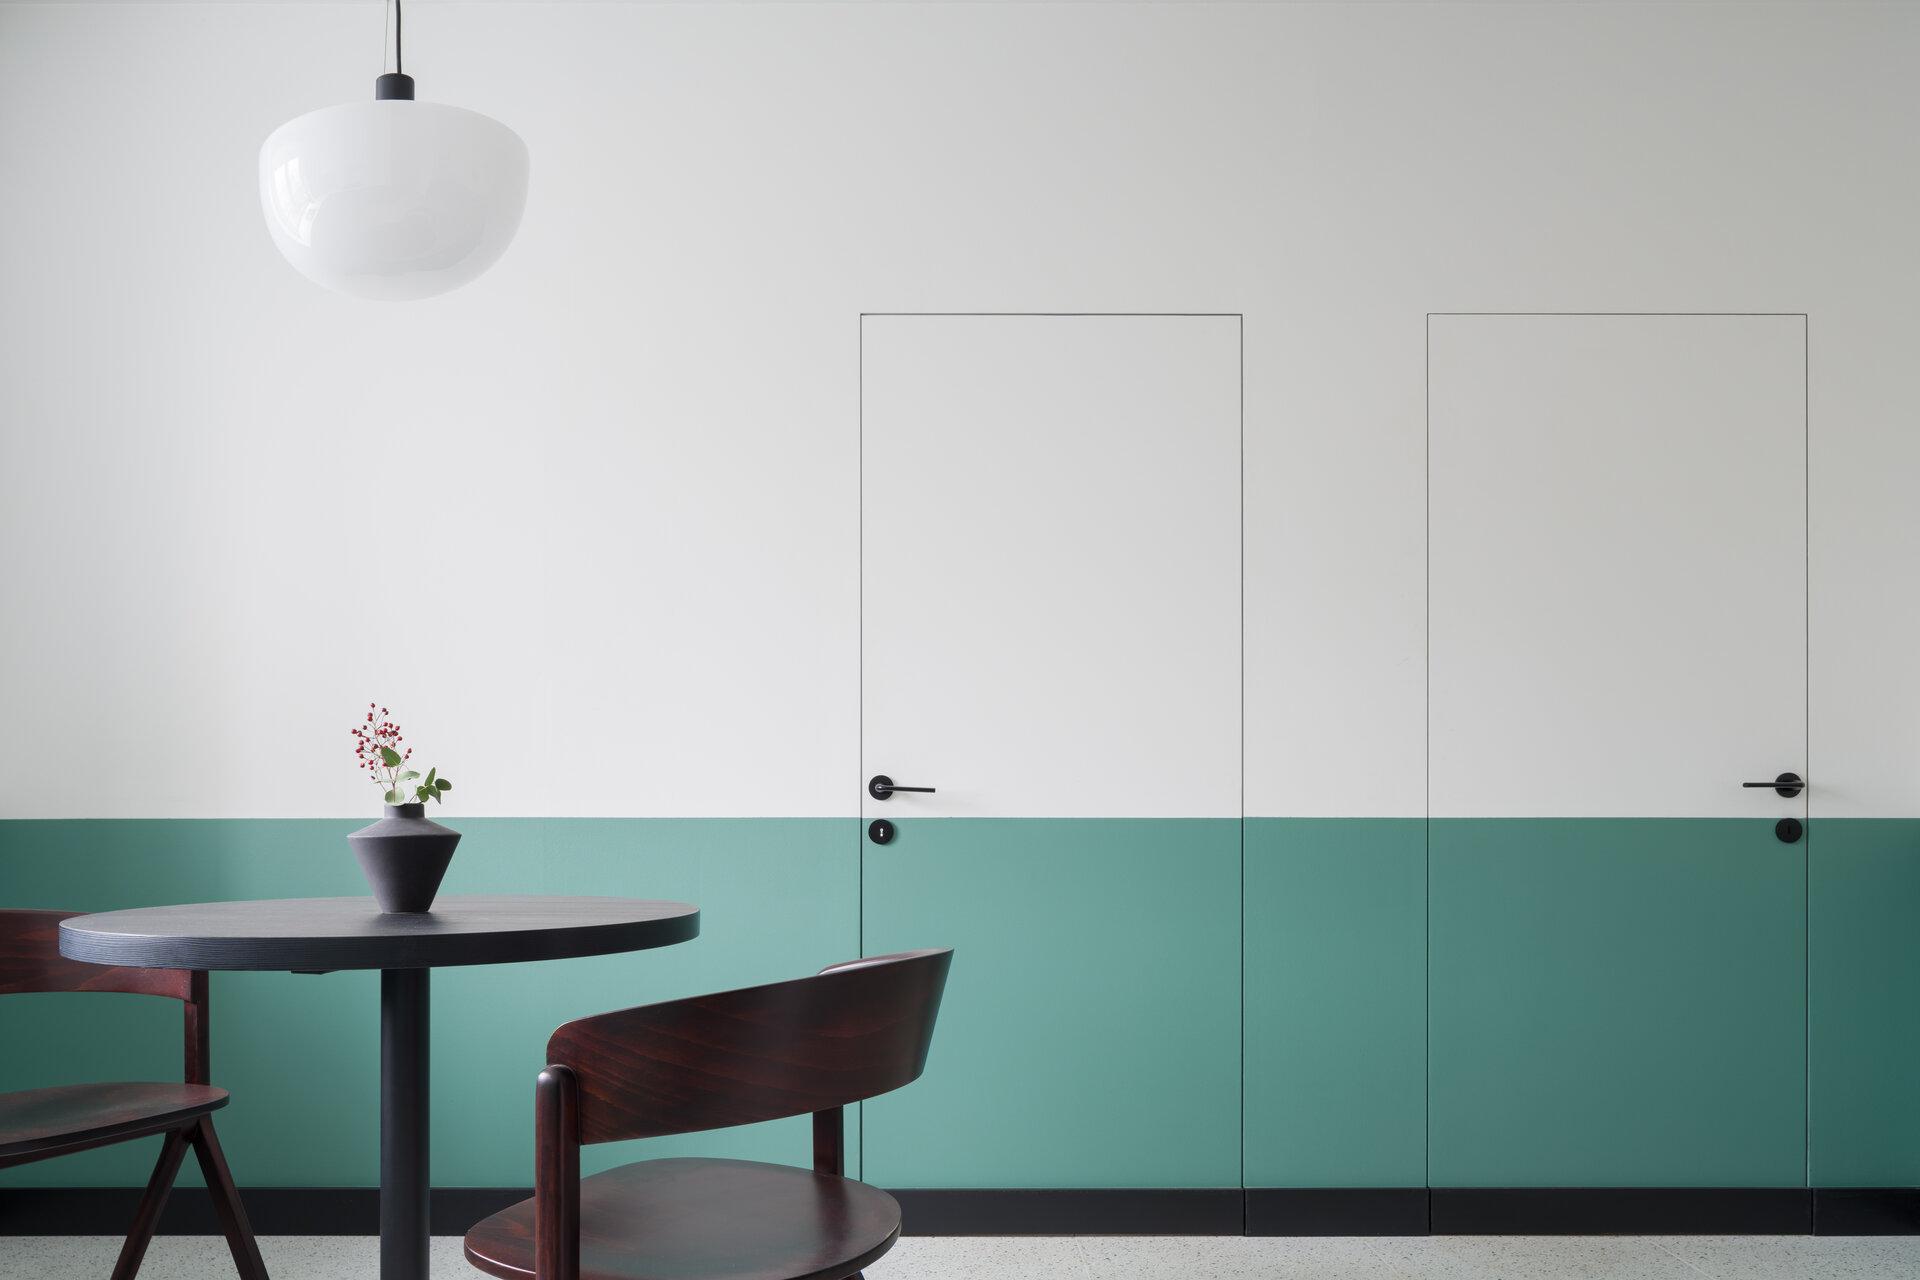 Modernes Architekturdesign mit halb grünen und weißen Türen und Wänden in einem stilvollen Esszimmer mit dunklem Tisch und Stühlen unter einer neuen Lampe